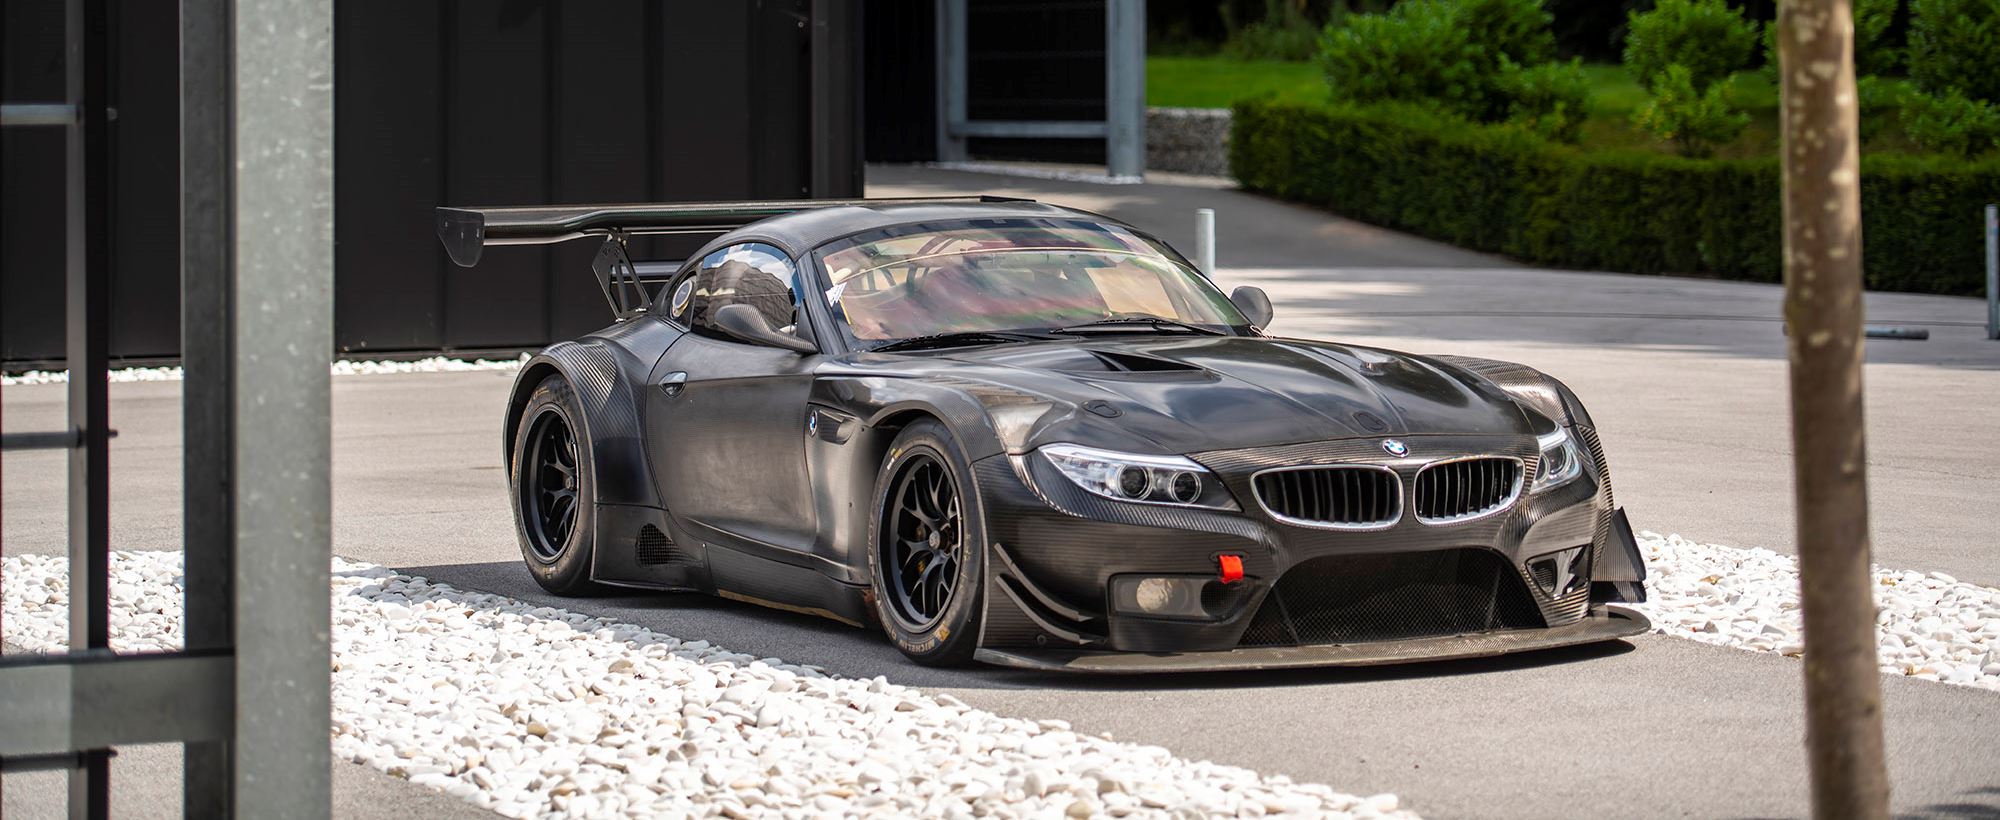 BMW Track car 007.jpg